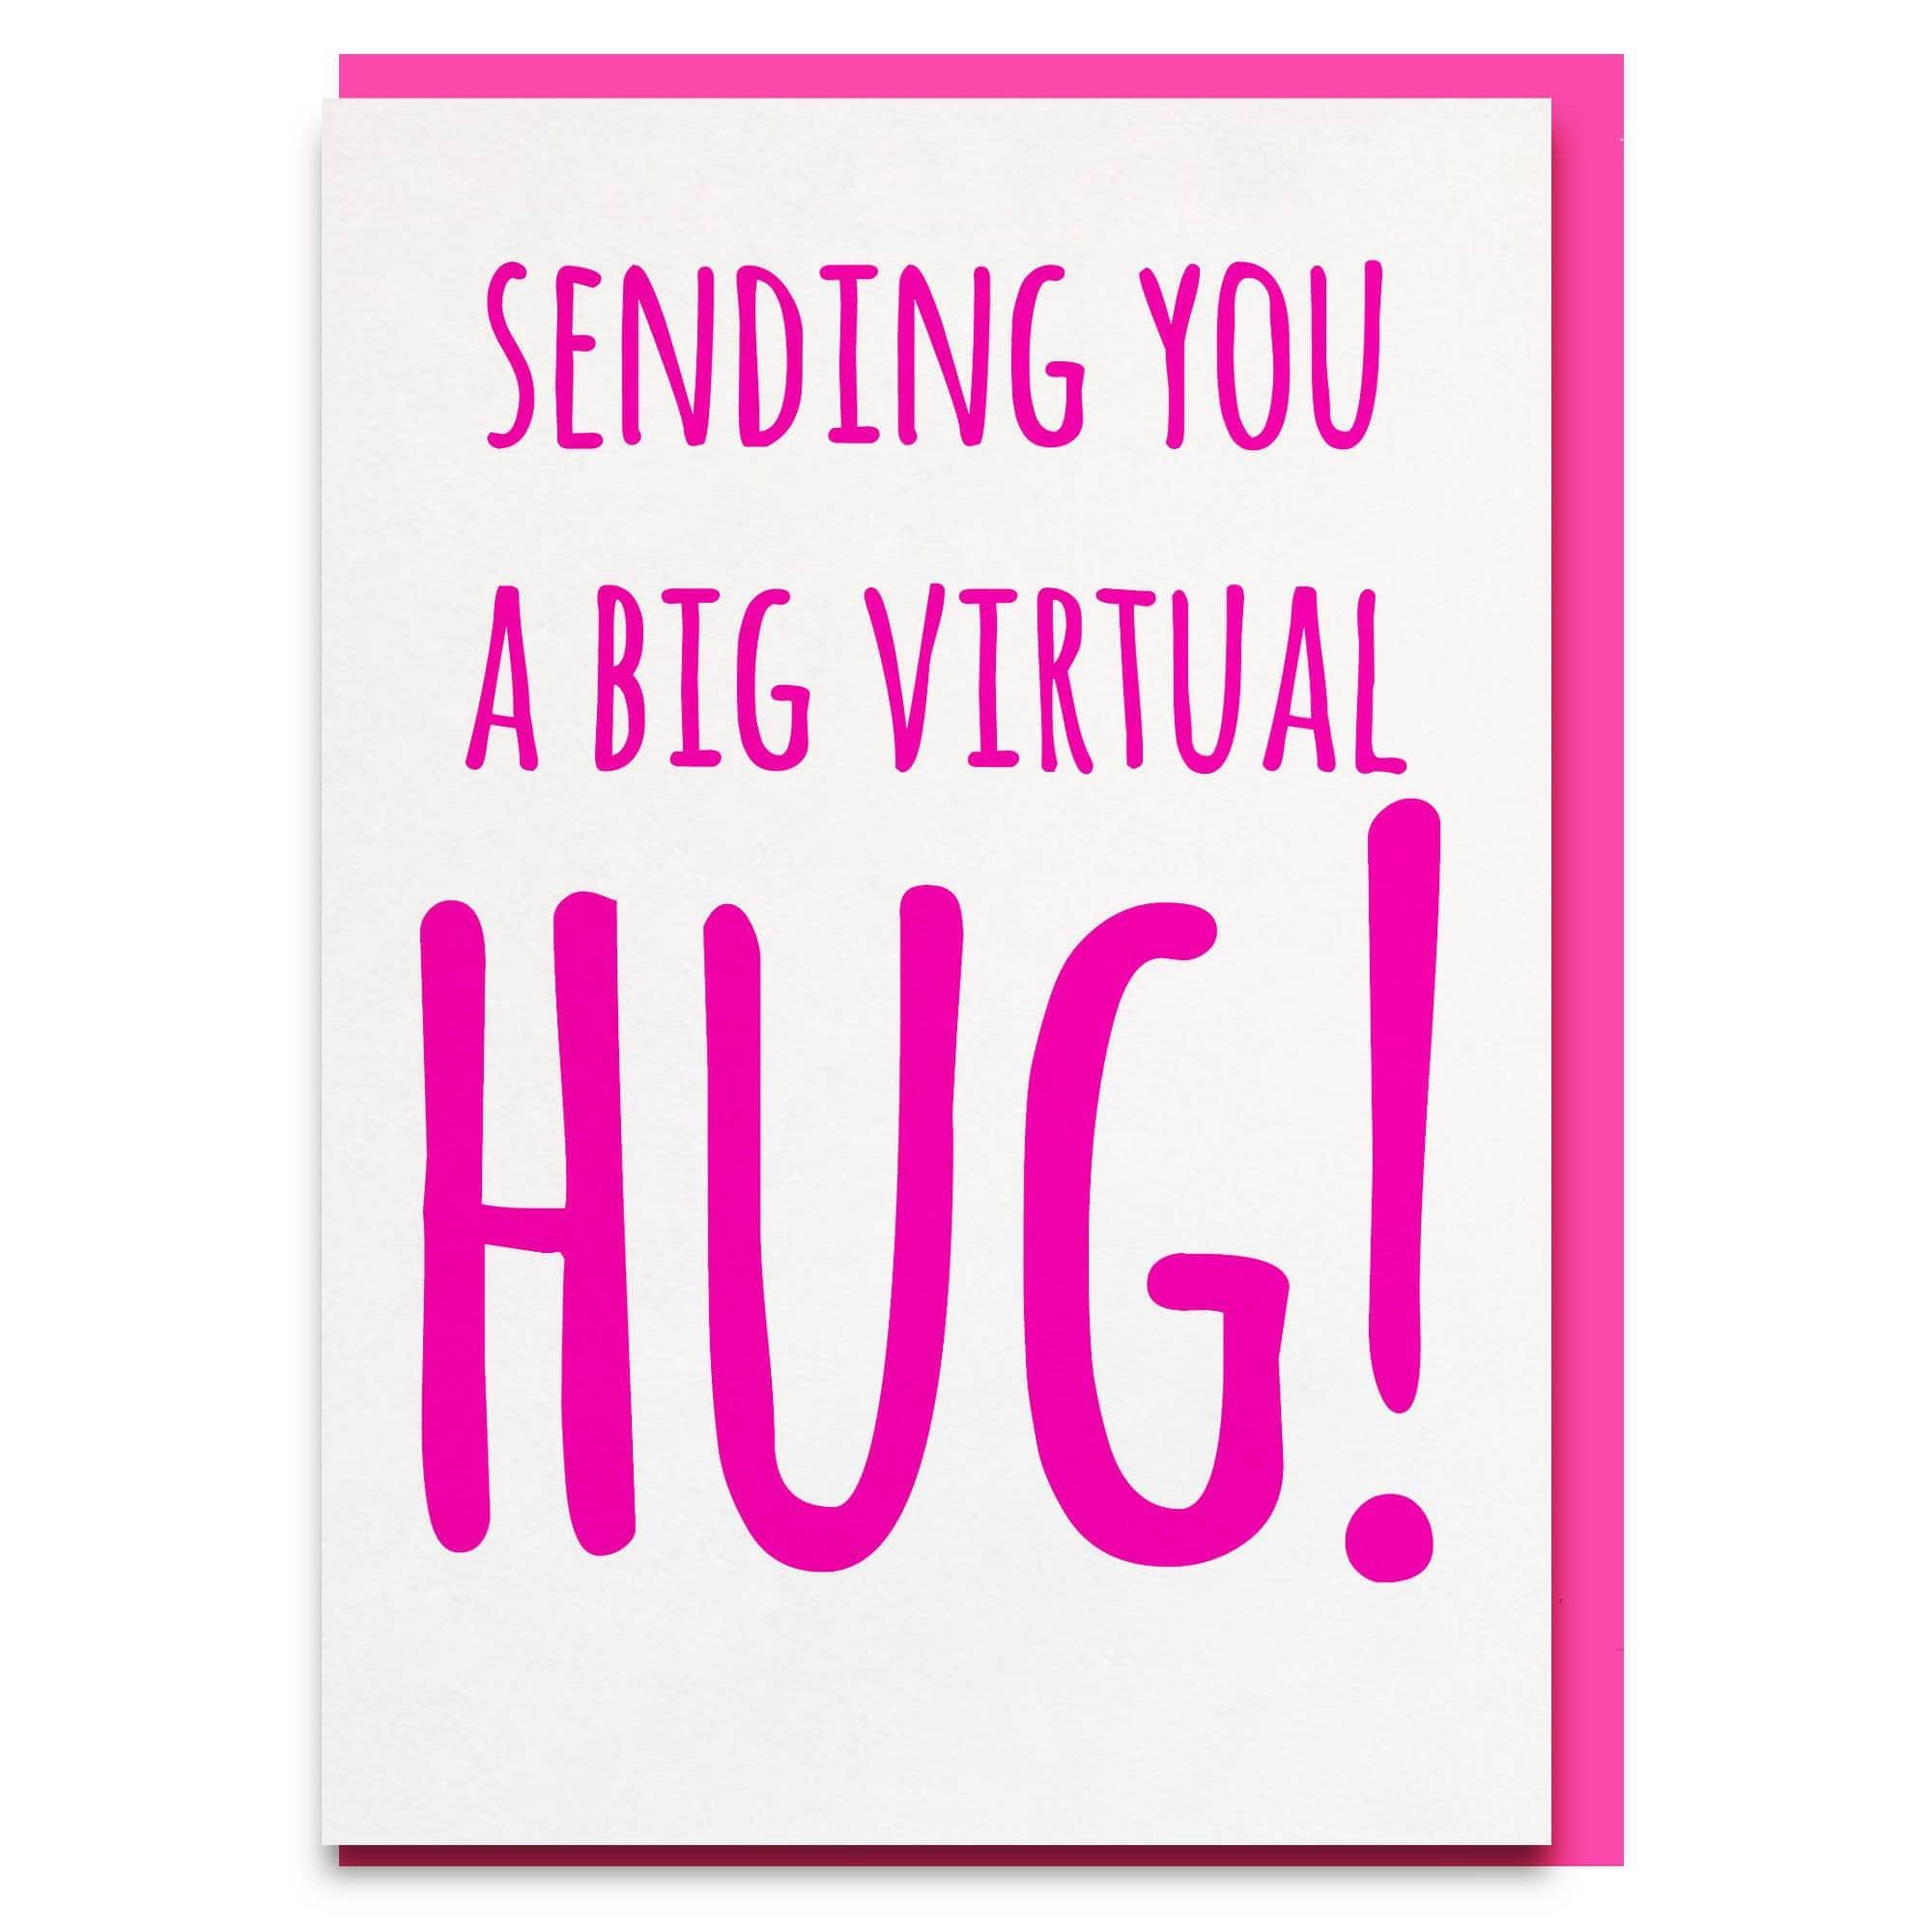 Virtual Hug